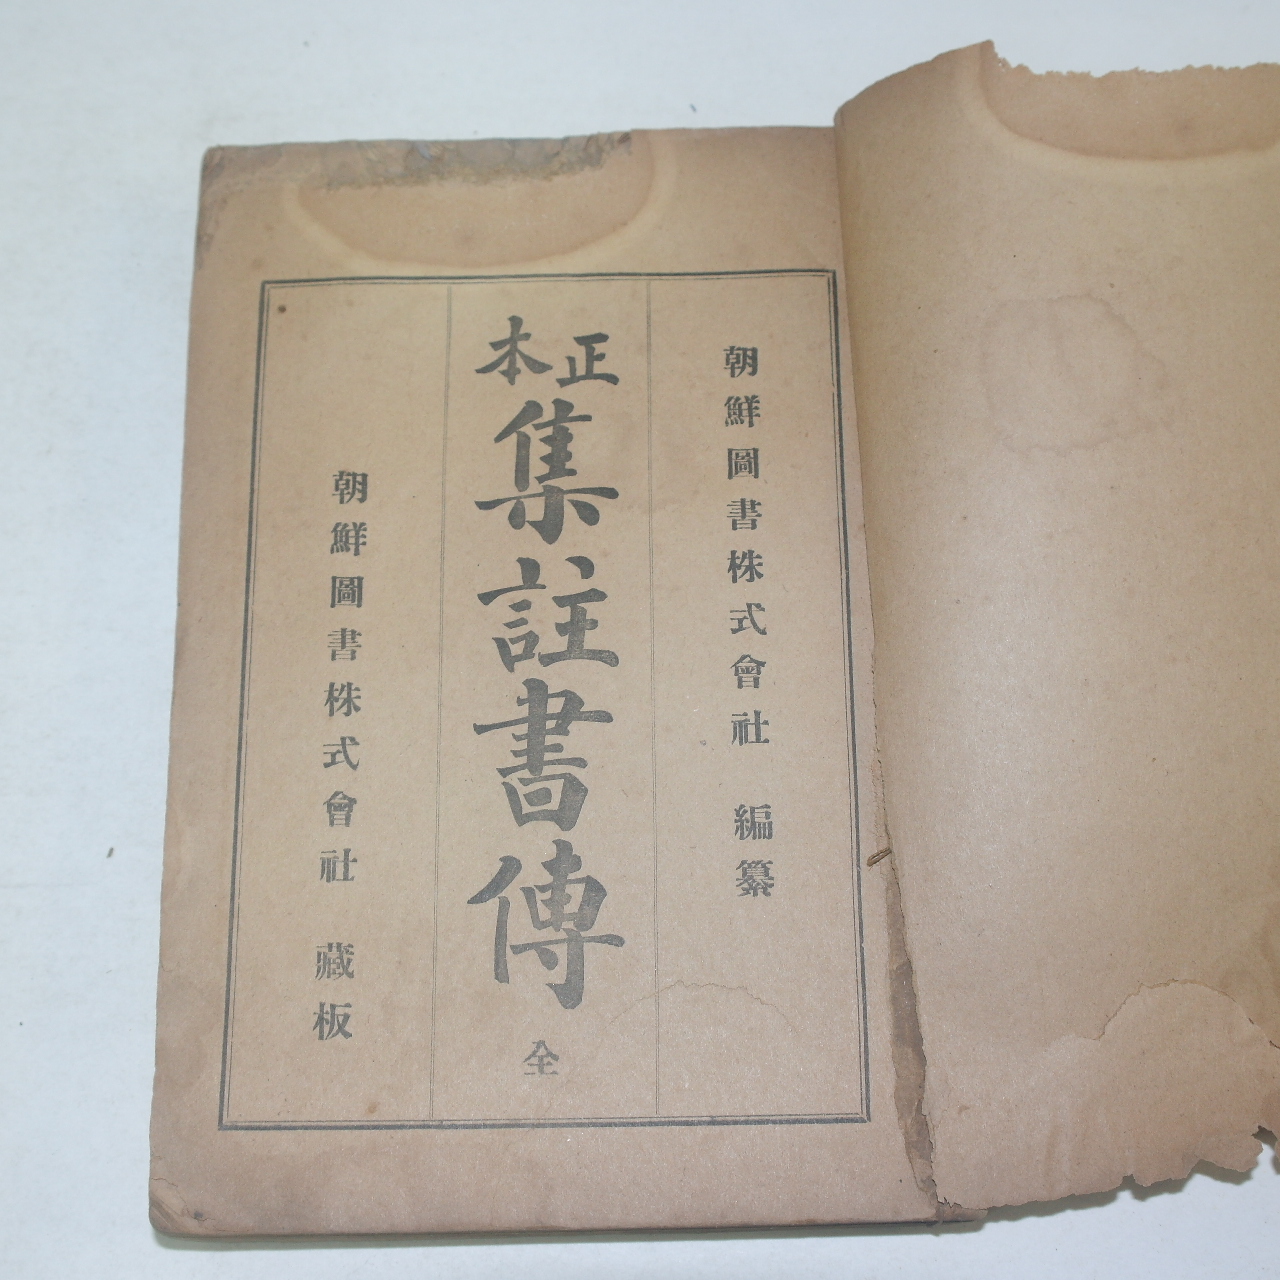 1920년 조선도서주식회사 정본집주서전(正本集註書傳) 1책완질